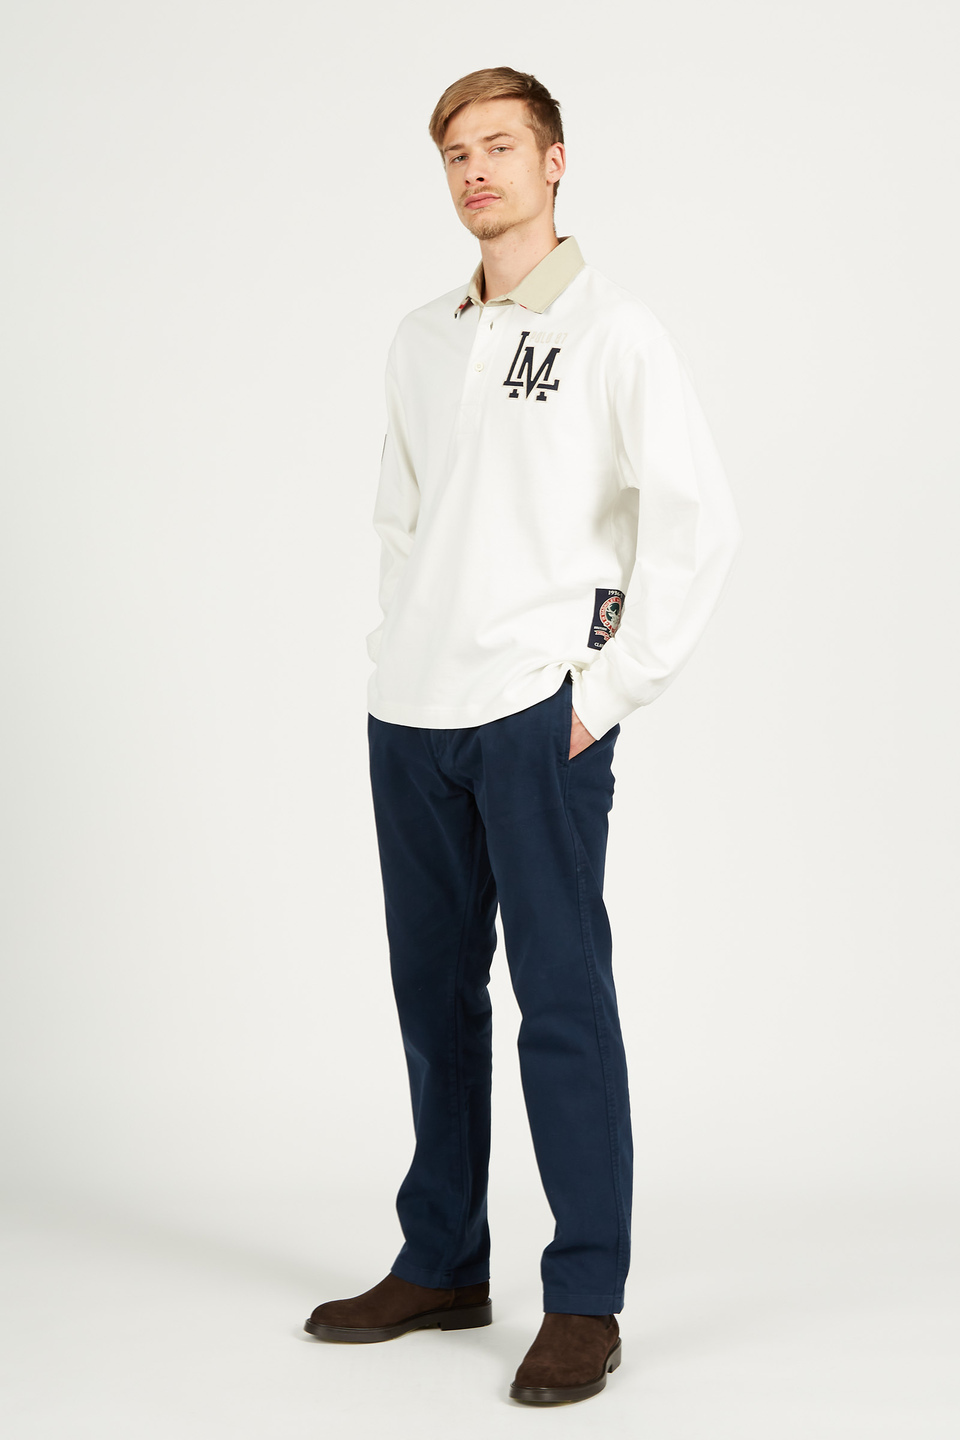 Pantalone da uomo in cotone modello chino regular fit | La Martina - Official Online Shop